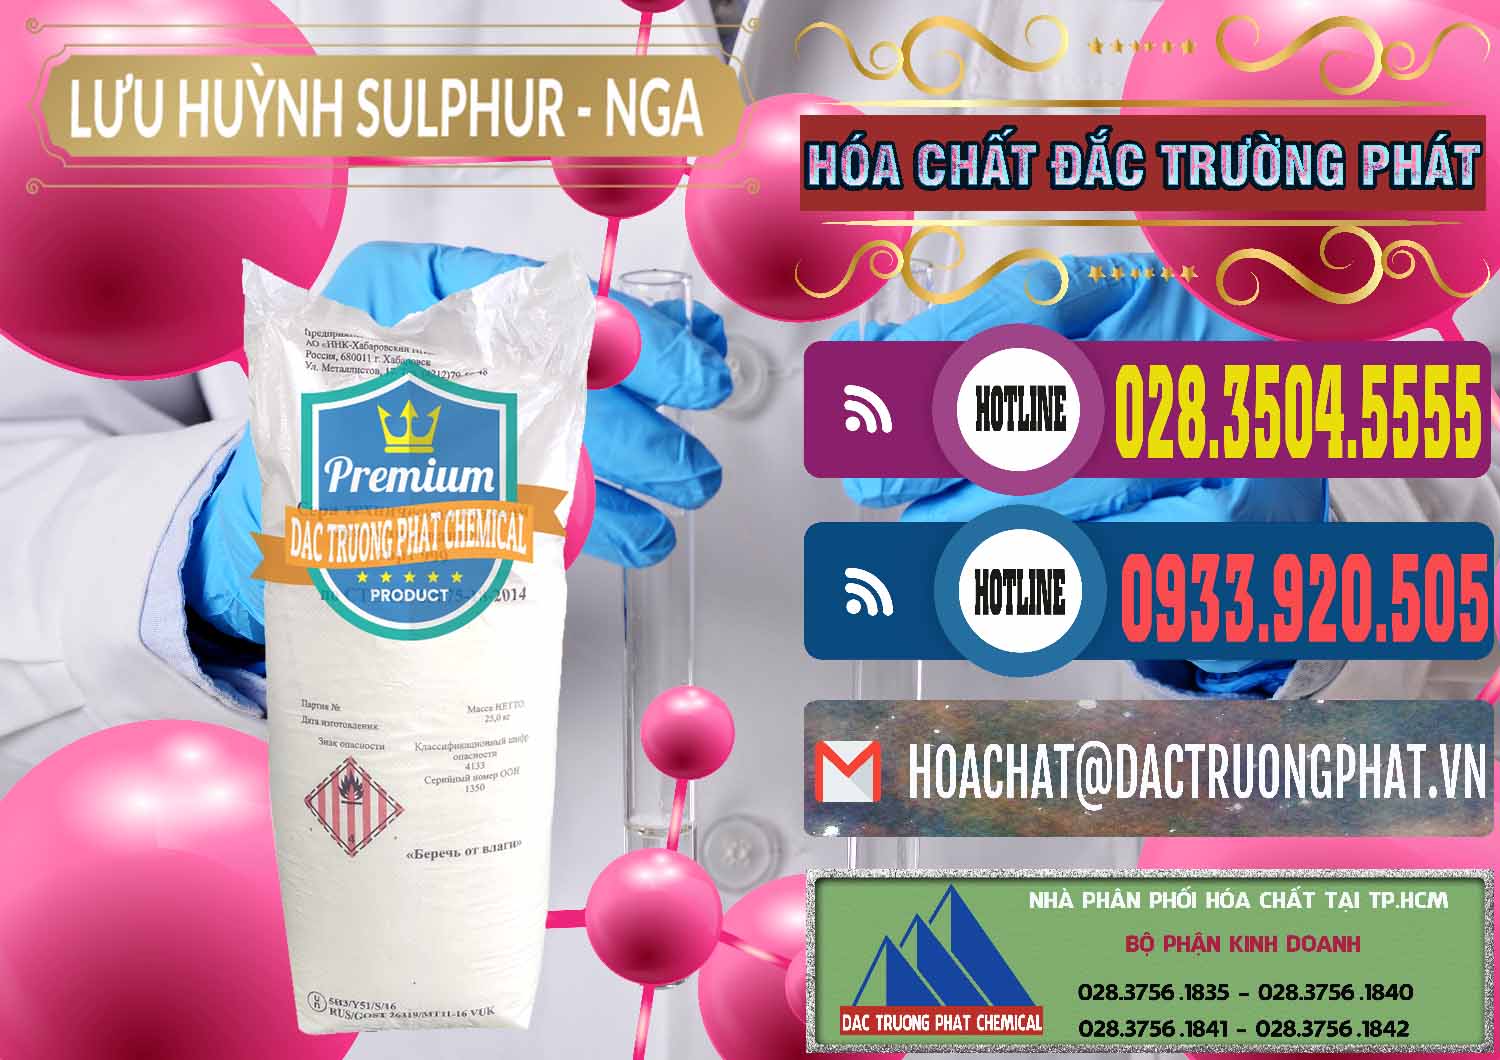 Cty cung cấp _ bán Lưu huỳnh Hạt - Sulfur Nga Russia - 0200 - Cty chuyên phân phối & kinh doanh hóa chất tại TP.HCM - muabanhoachat.com.vn